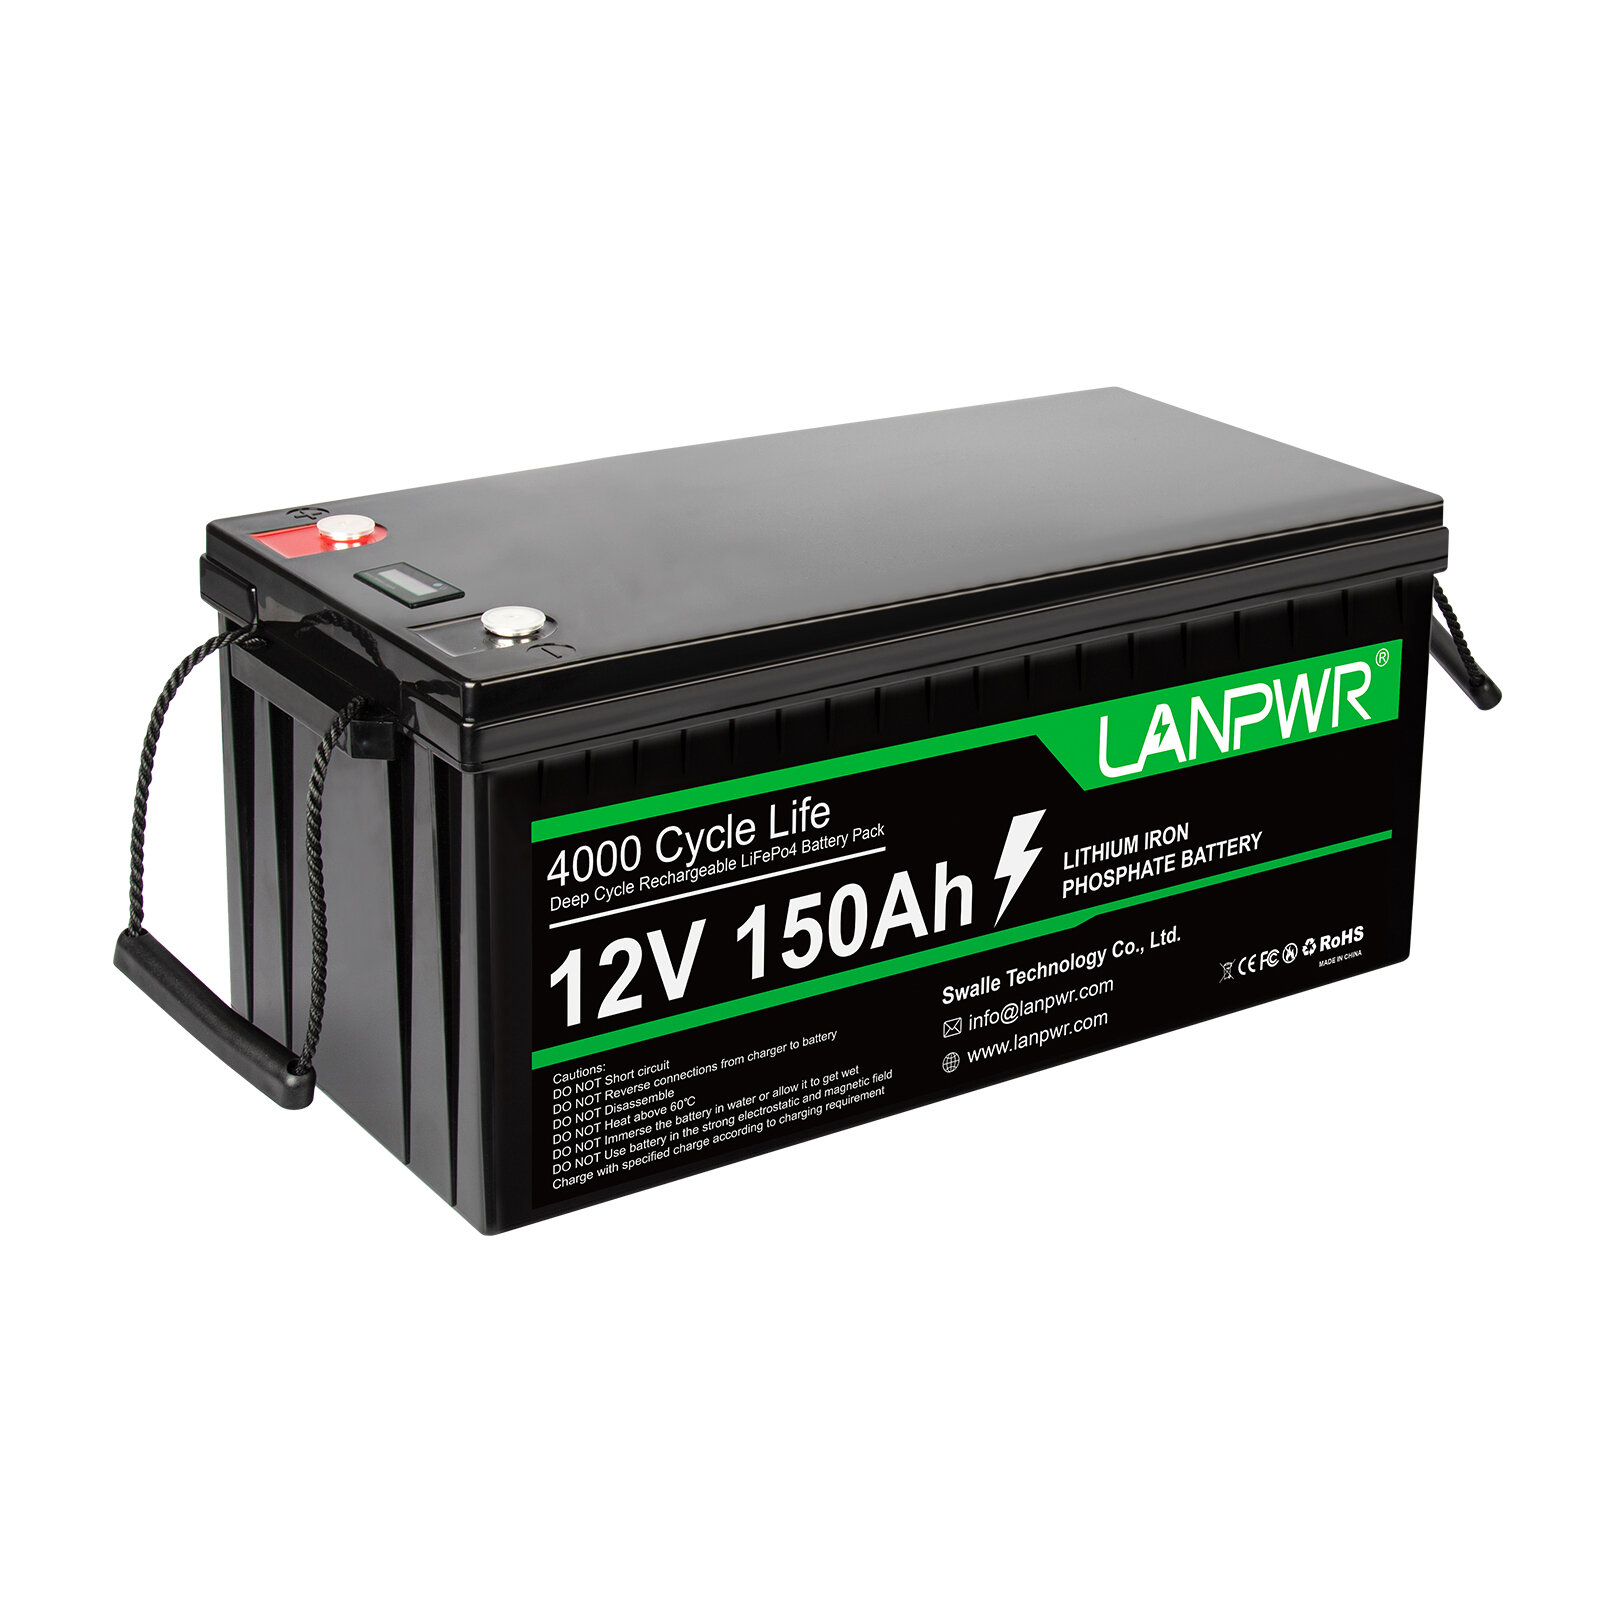 [EU Direct] Bateria LANPWR LiFePO4 de 12V e 150Ah, com capacidade de 1920Wh e bateria de lítio integrada de 100A BMS, resistente à água com classificação IP65, para substituir a maioria das fontes de energia de backup, armazenamento de energia domés